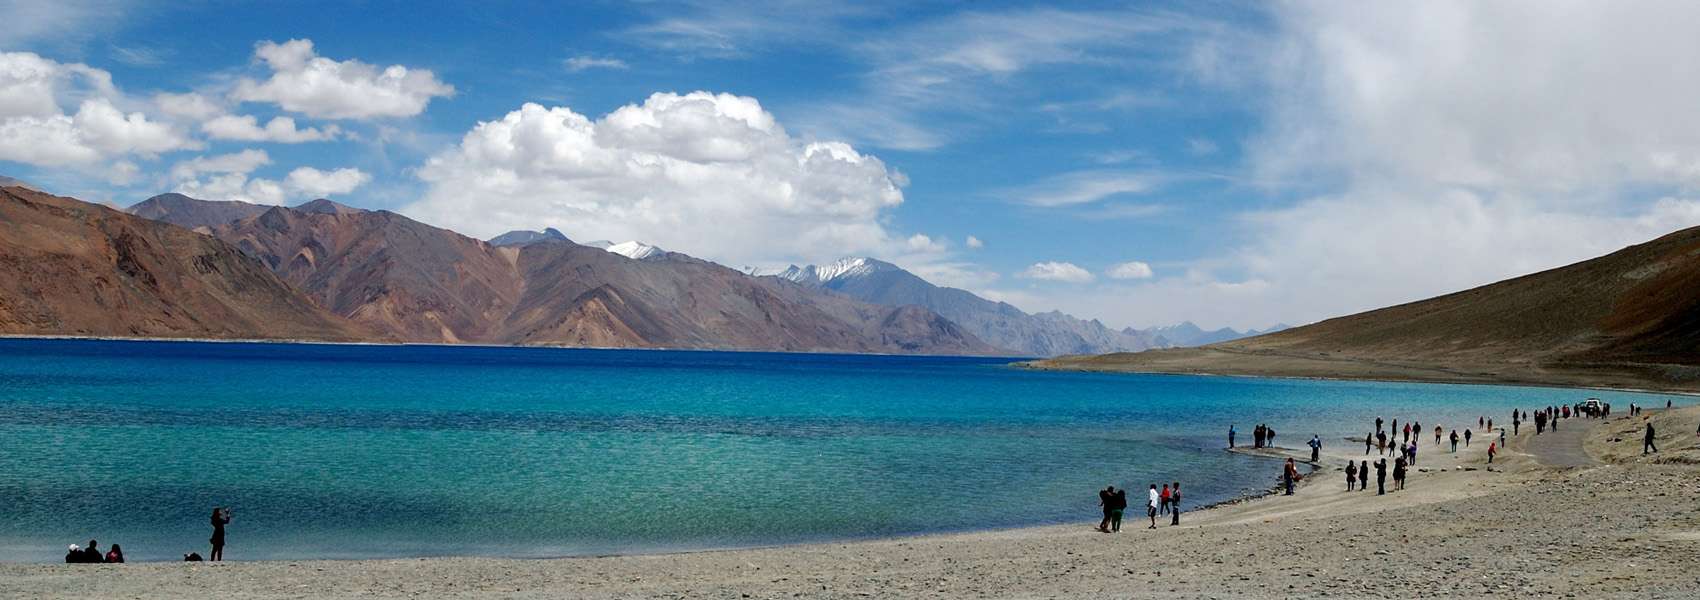 Tsomoriri lake ladakh